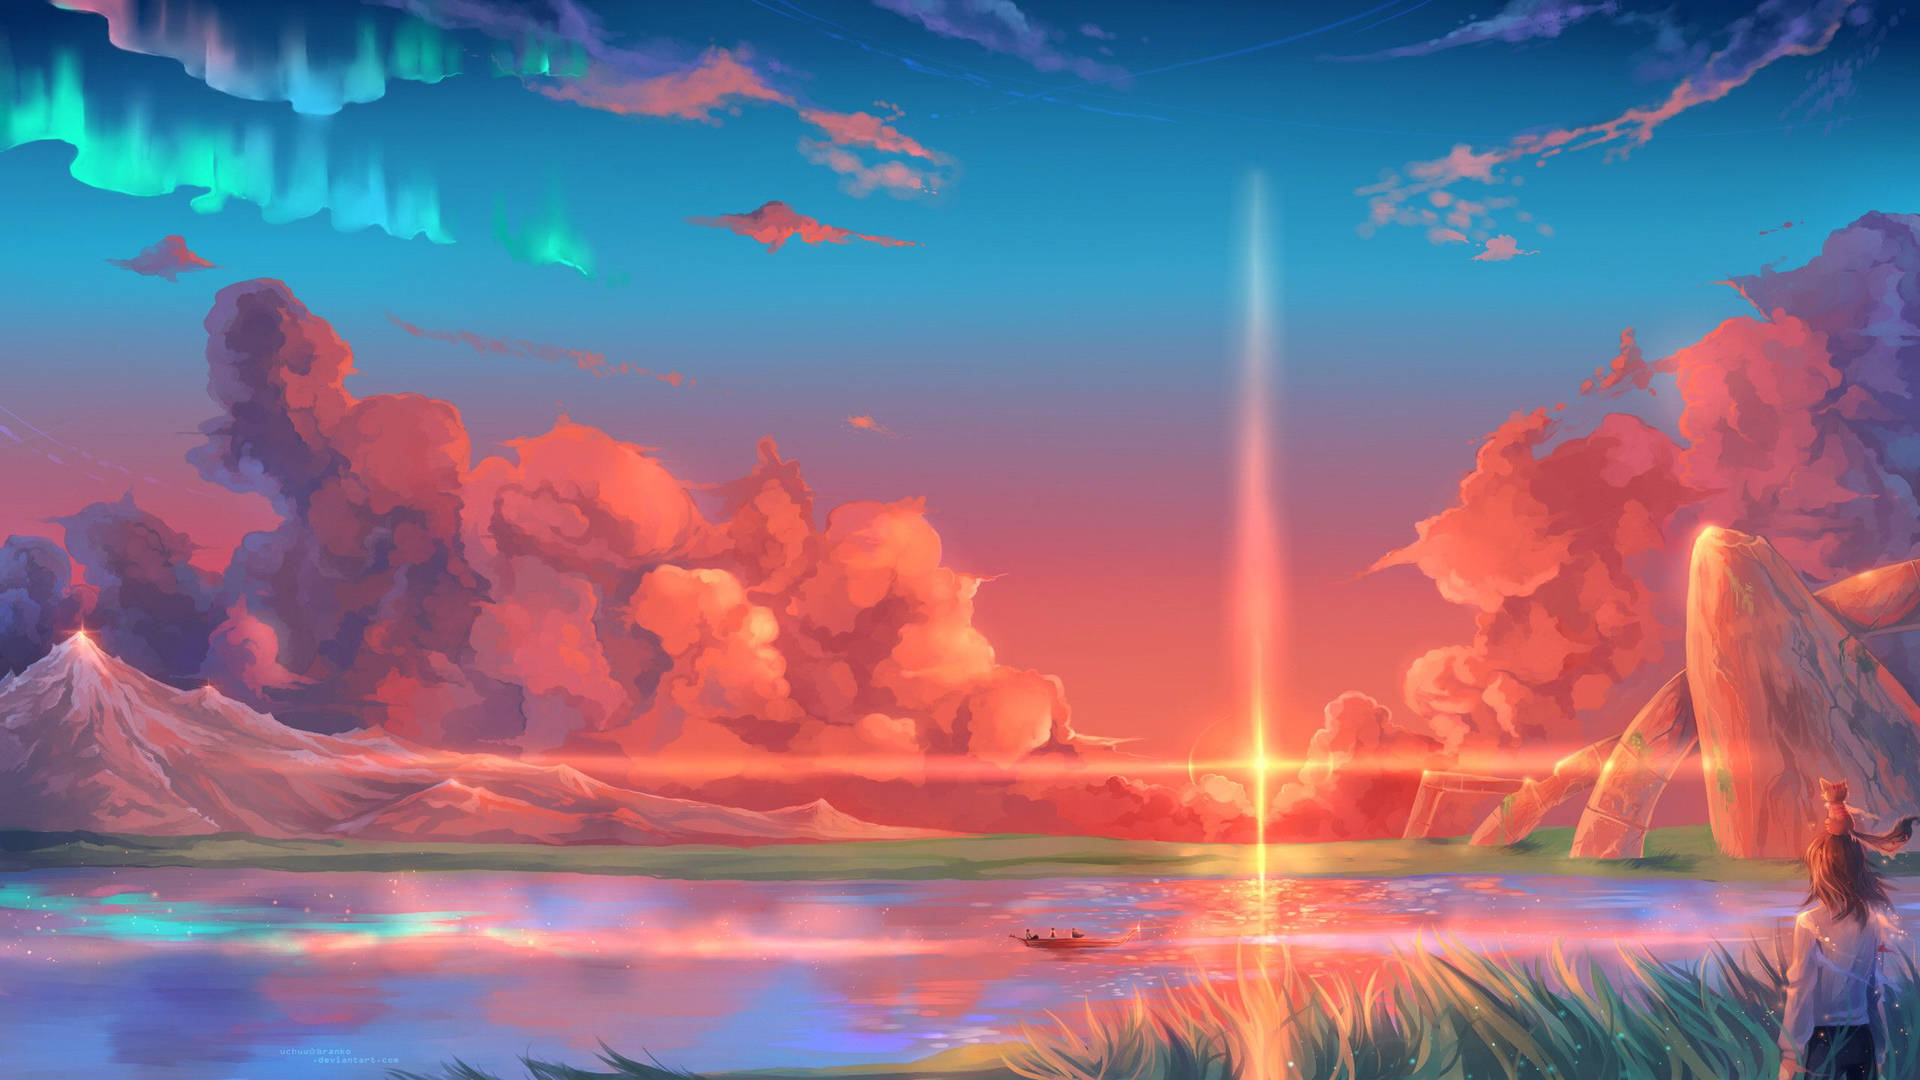 Download Sunrise Aesthetic Anime Art Desktop Wallpaper